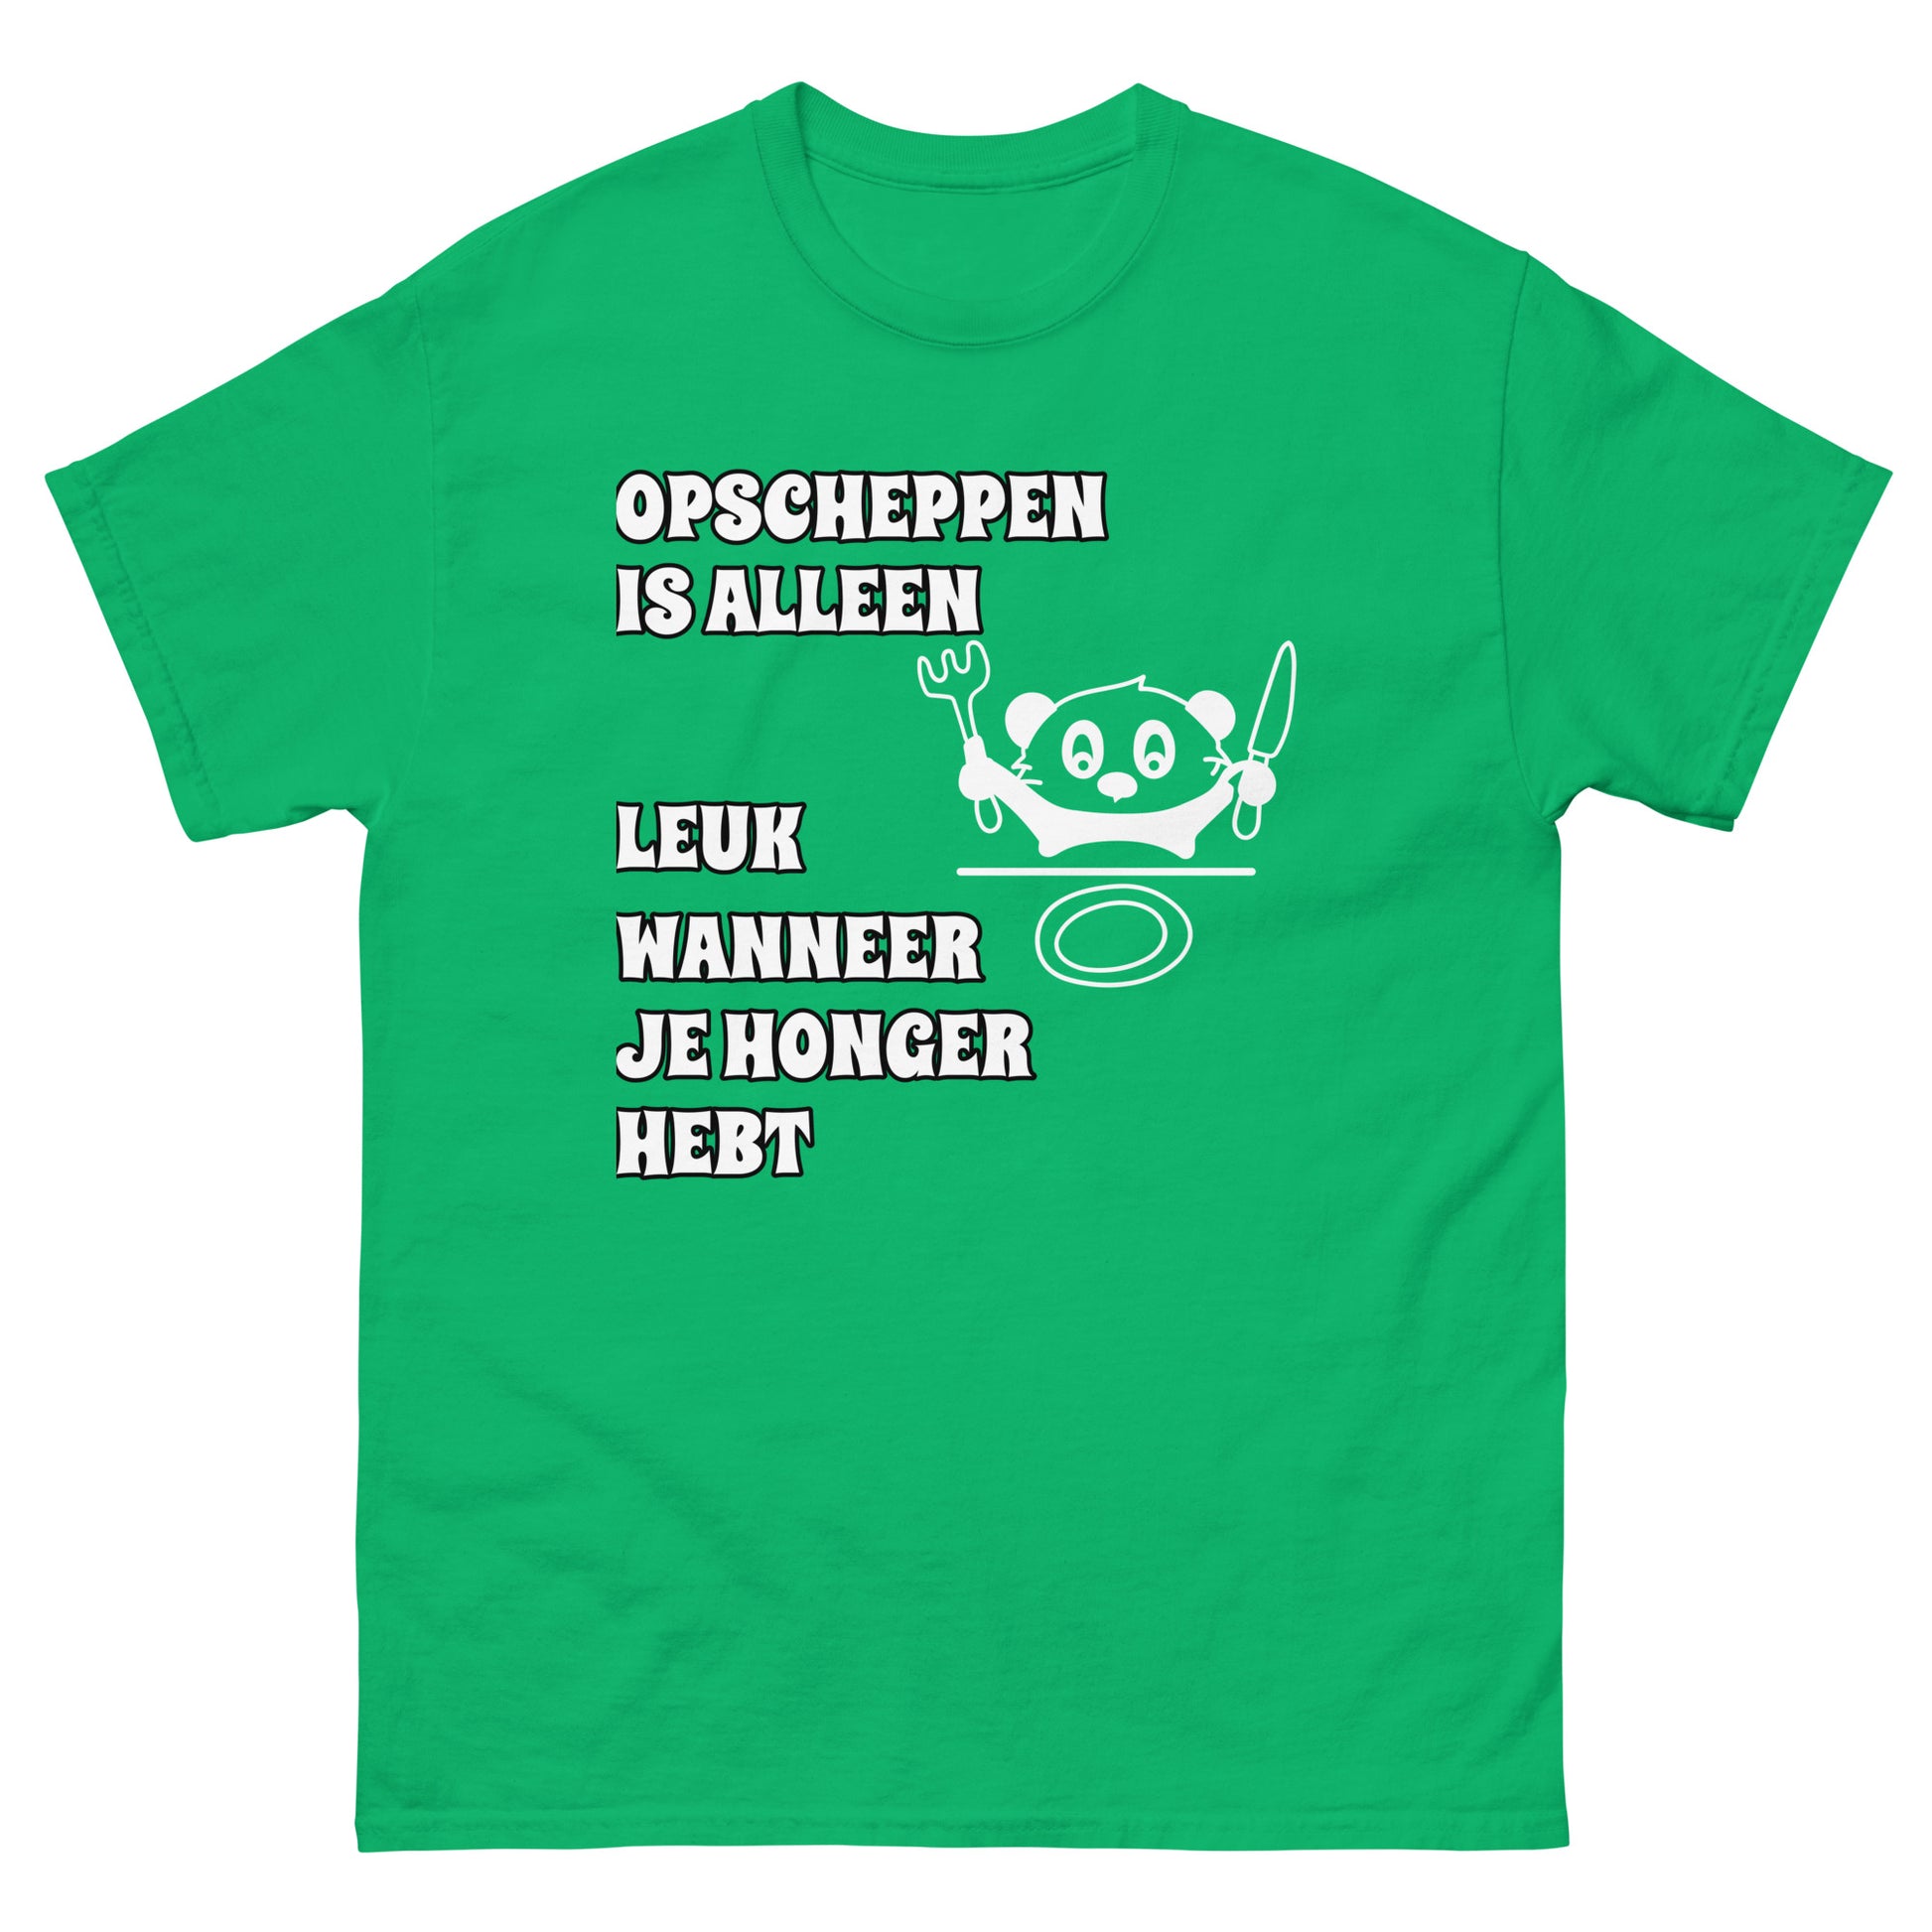 groene T-shirt met tekst  “opscheppen is alleen leuk wanneer je honger hebt” 